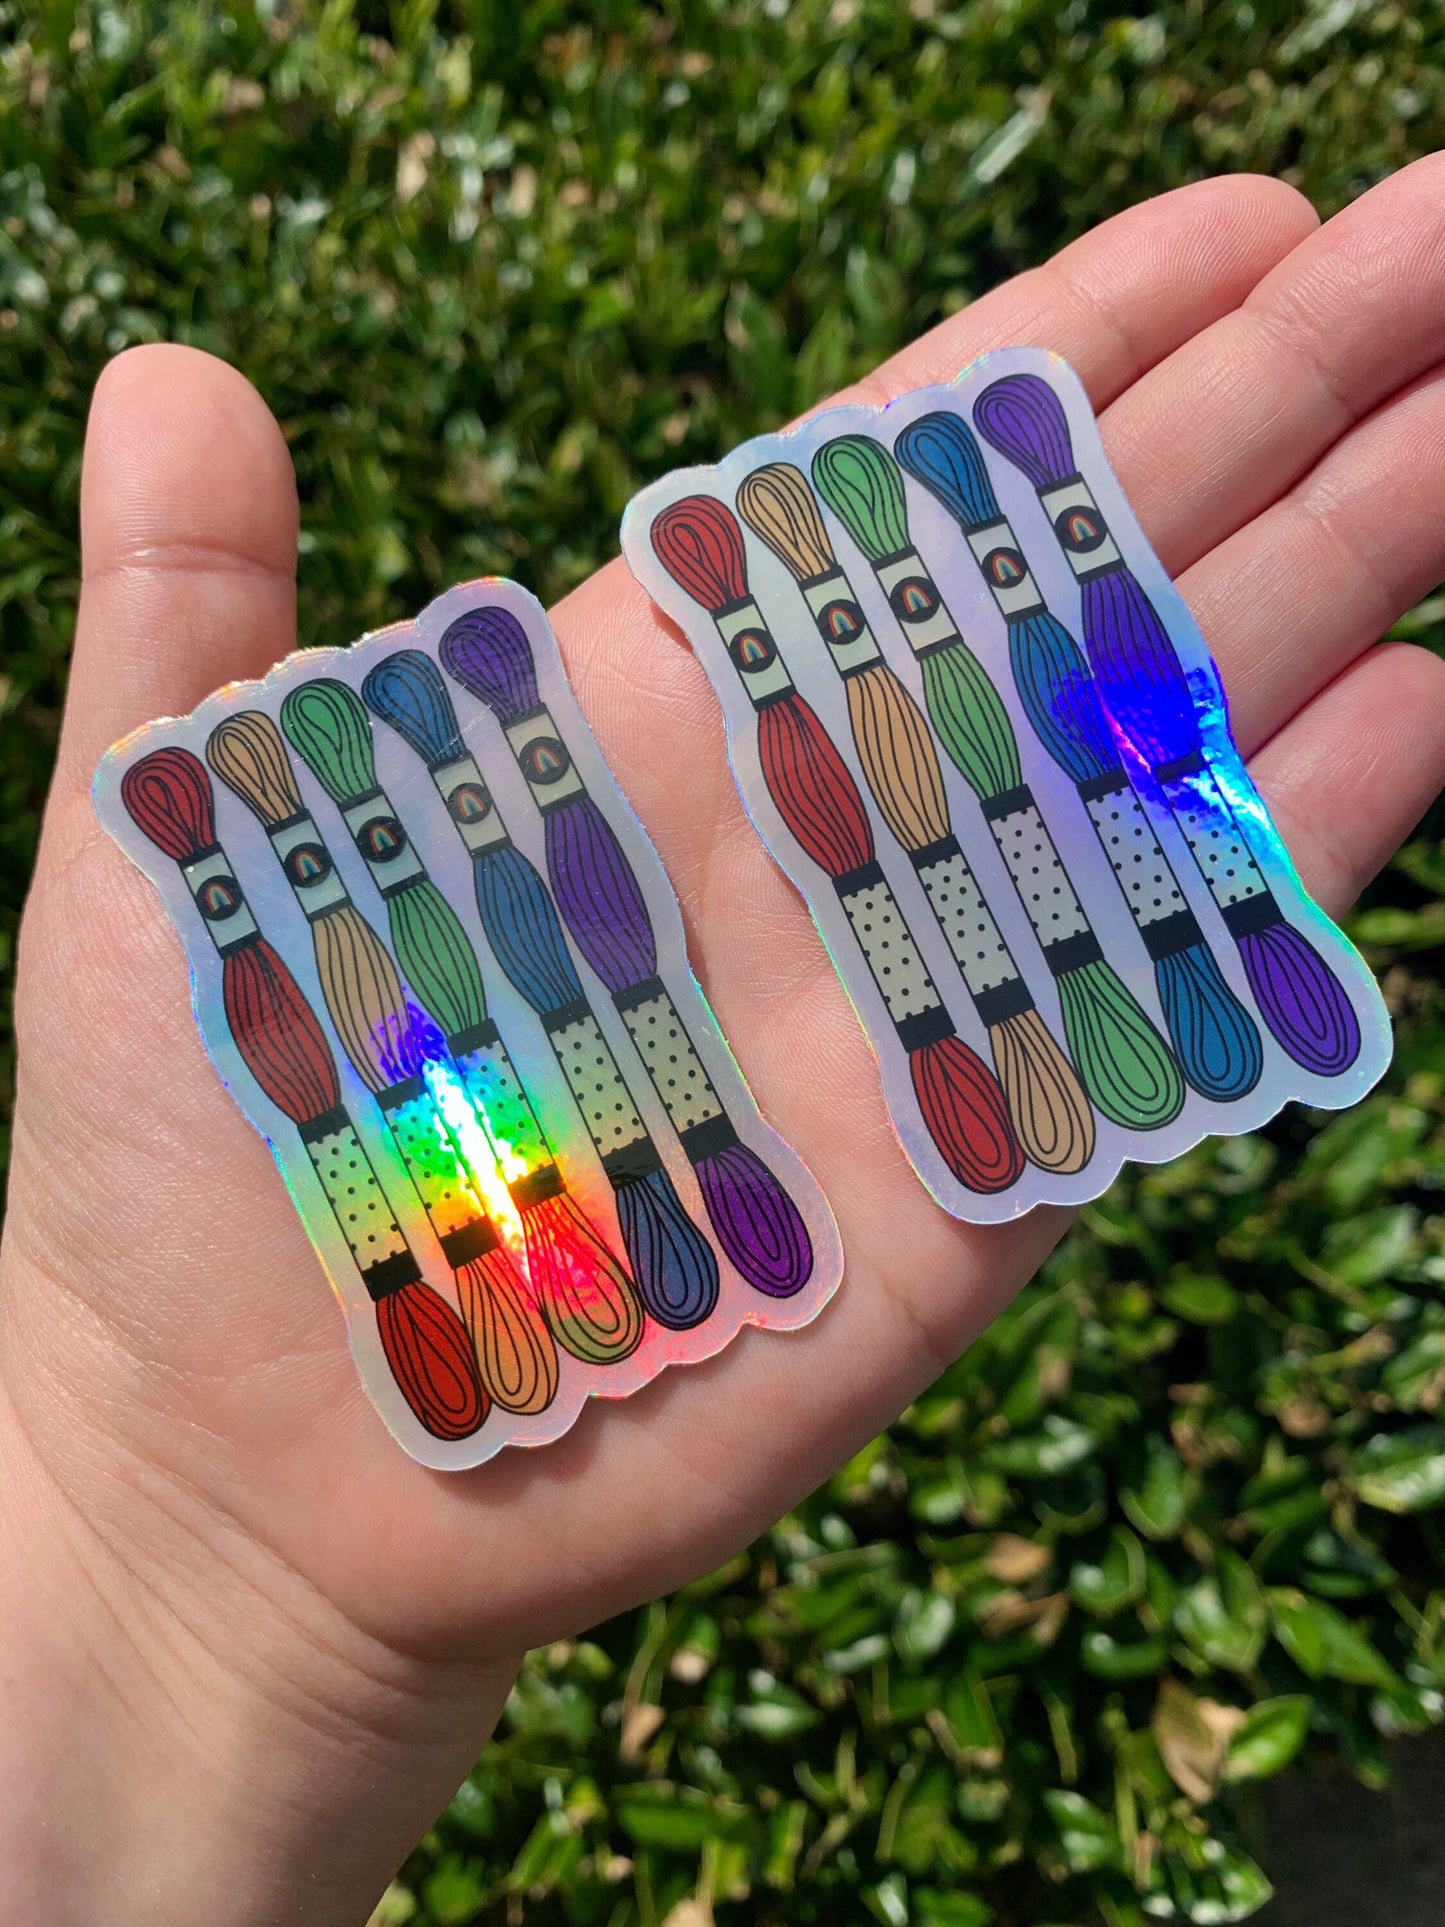 Holographic Rainbow Embroidery Floss Skein Sticker - Waterproof, Vinyl Sticker